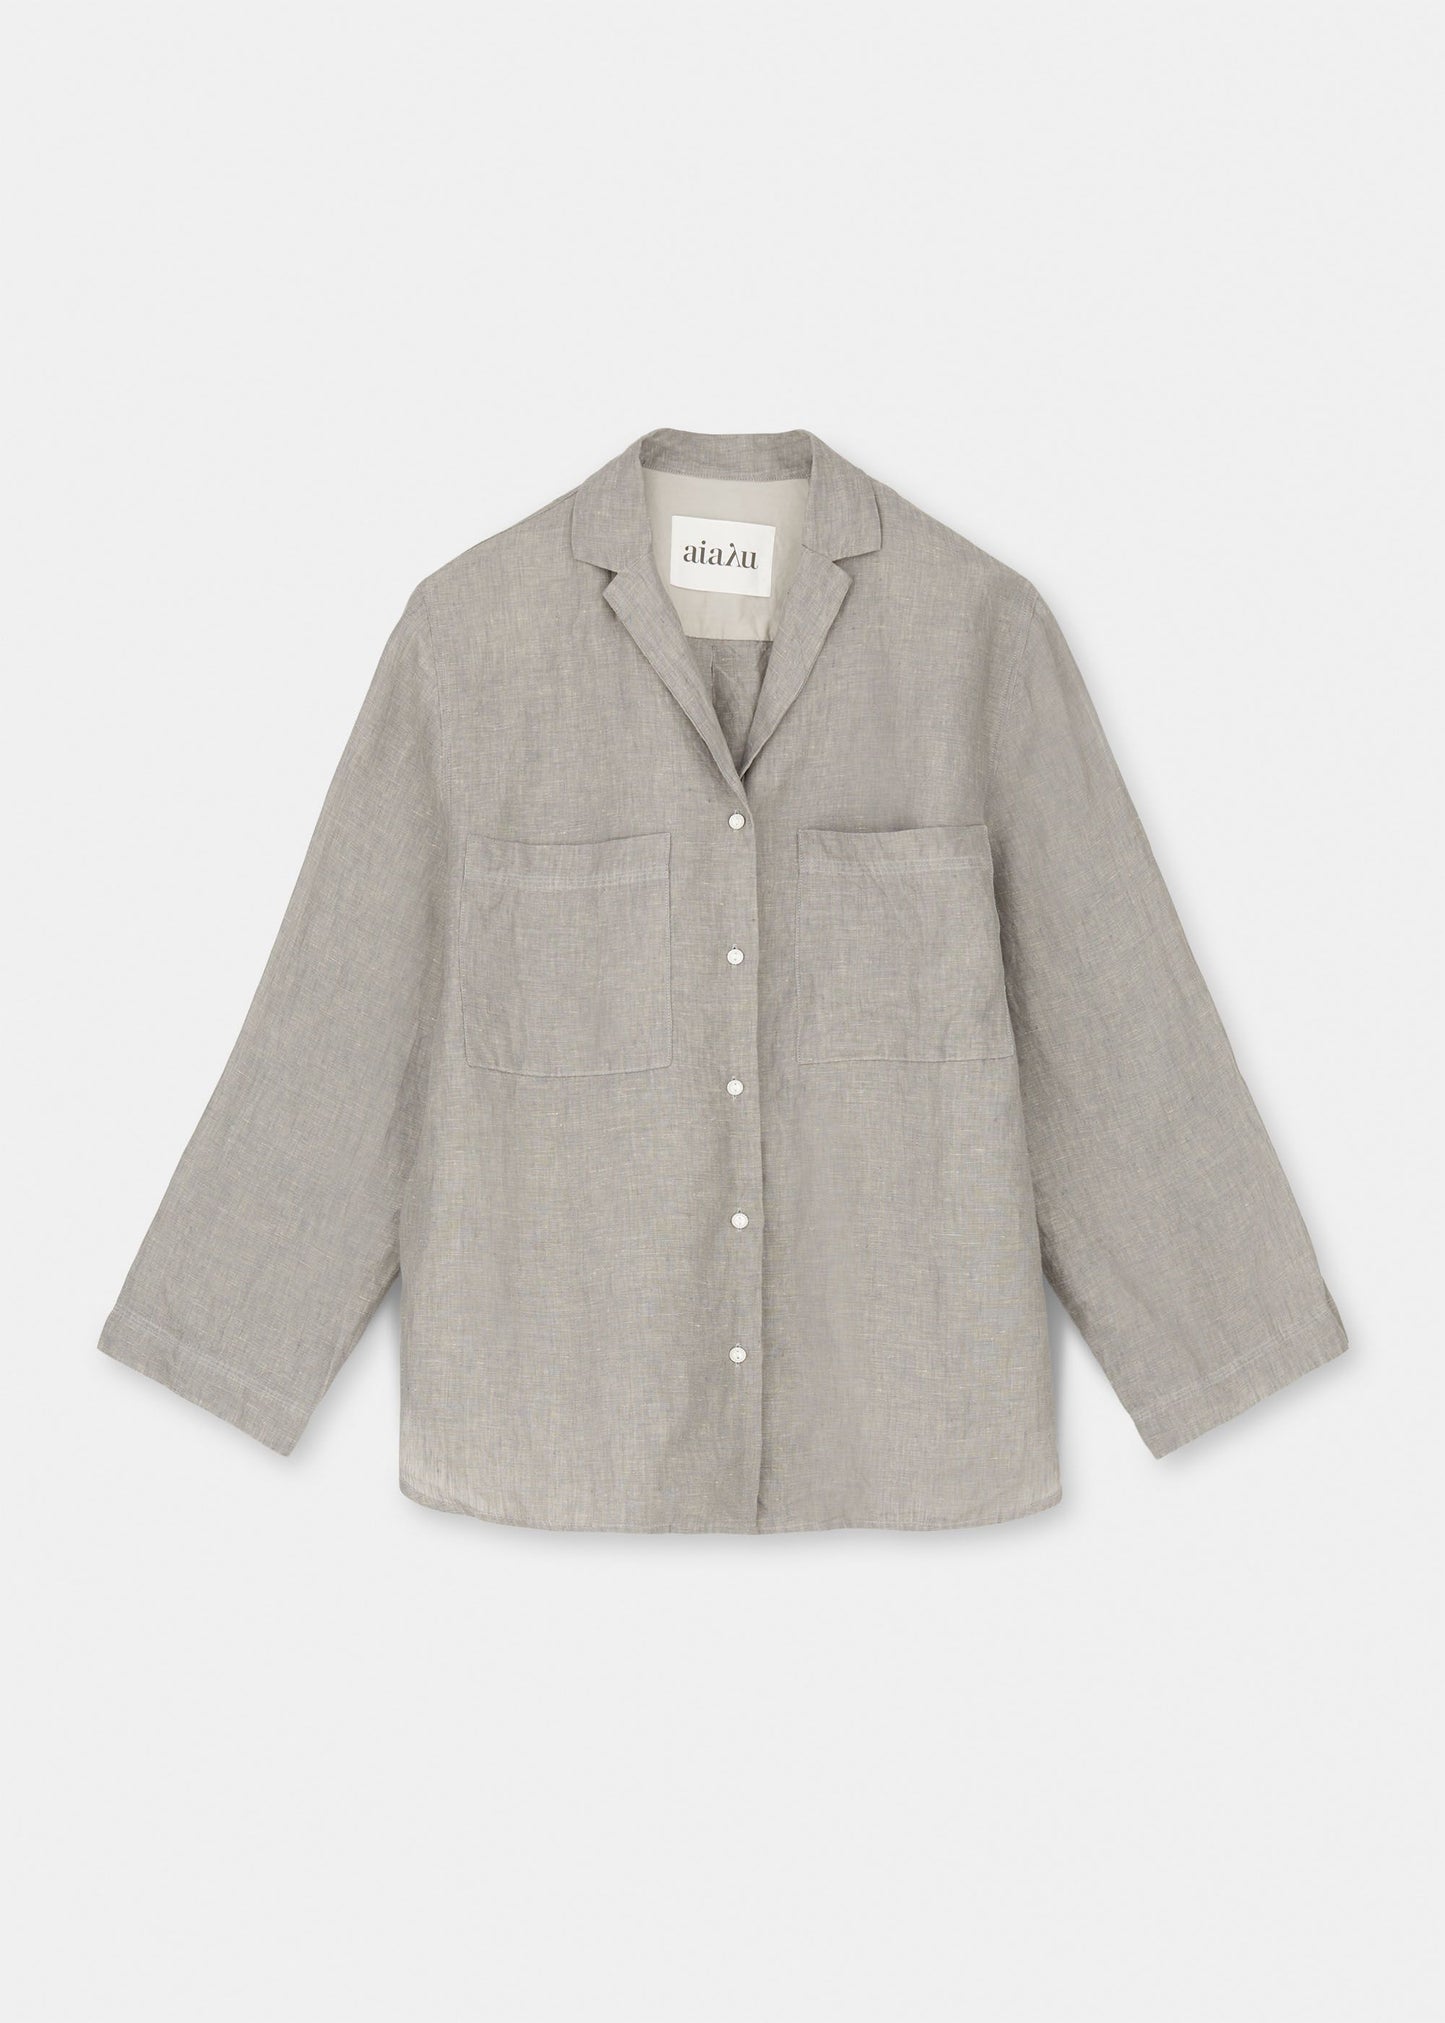 Aiayu "Jiro Shirt Linen" Grey